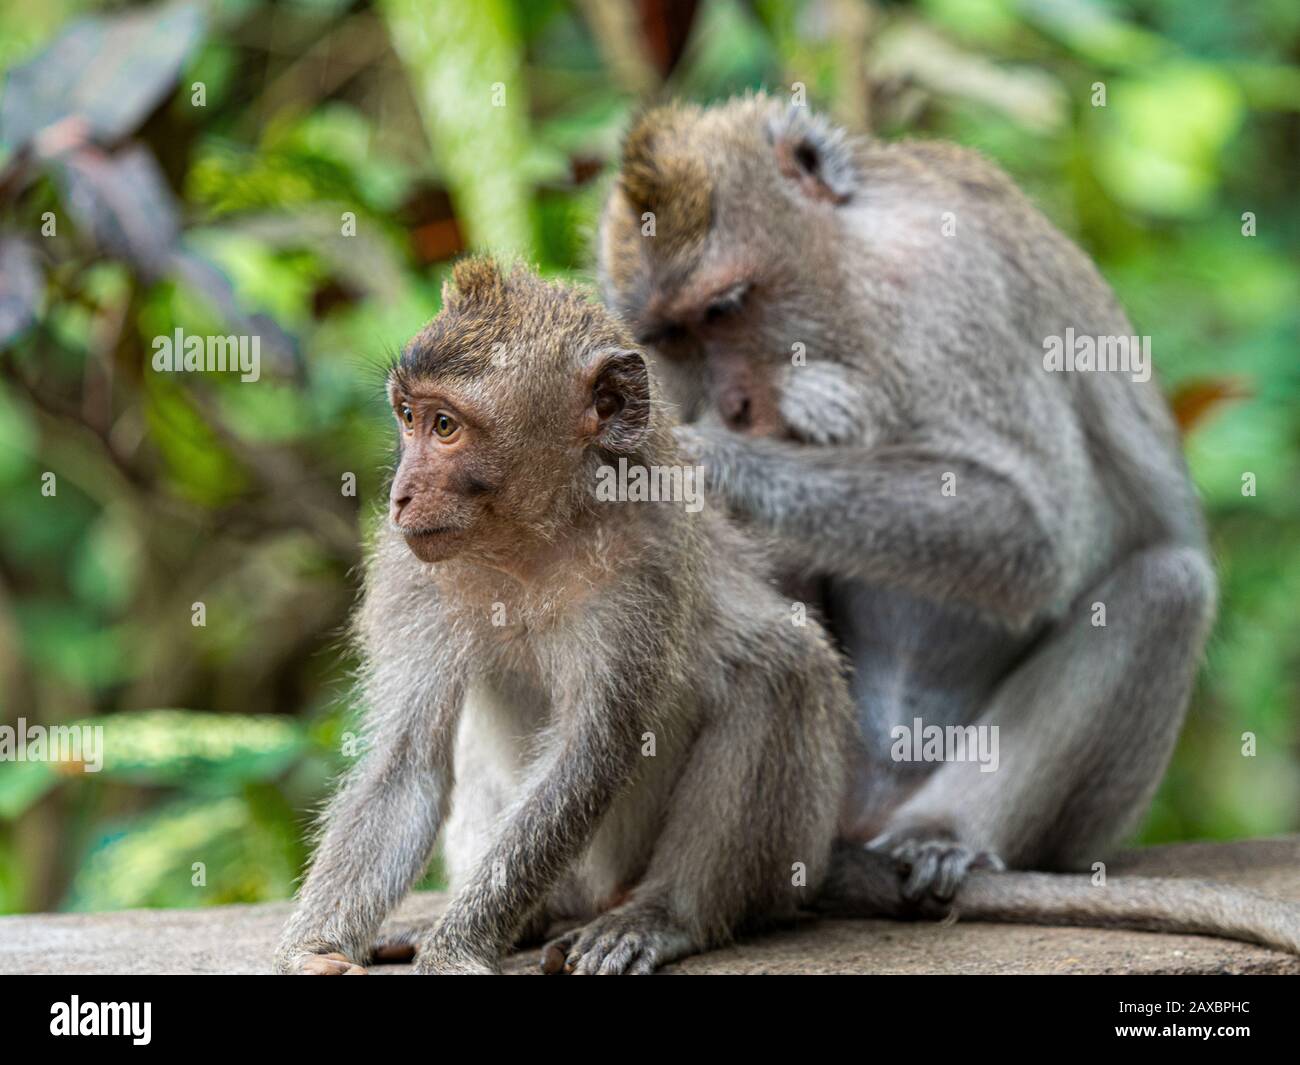 Shameful monkey stock image. Image of cleaning, africa - 87532525